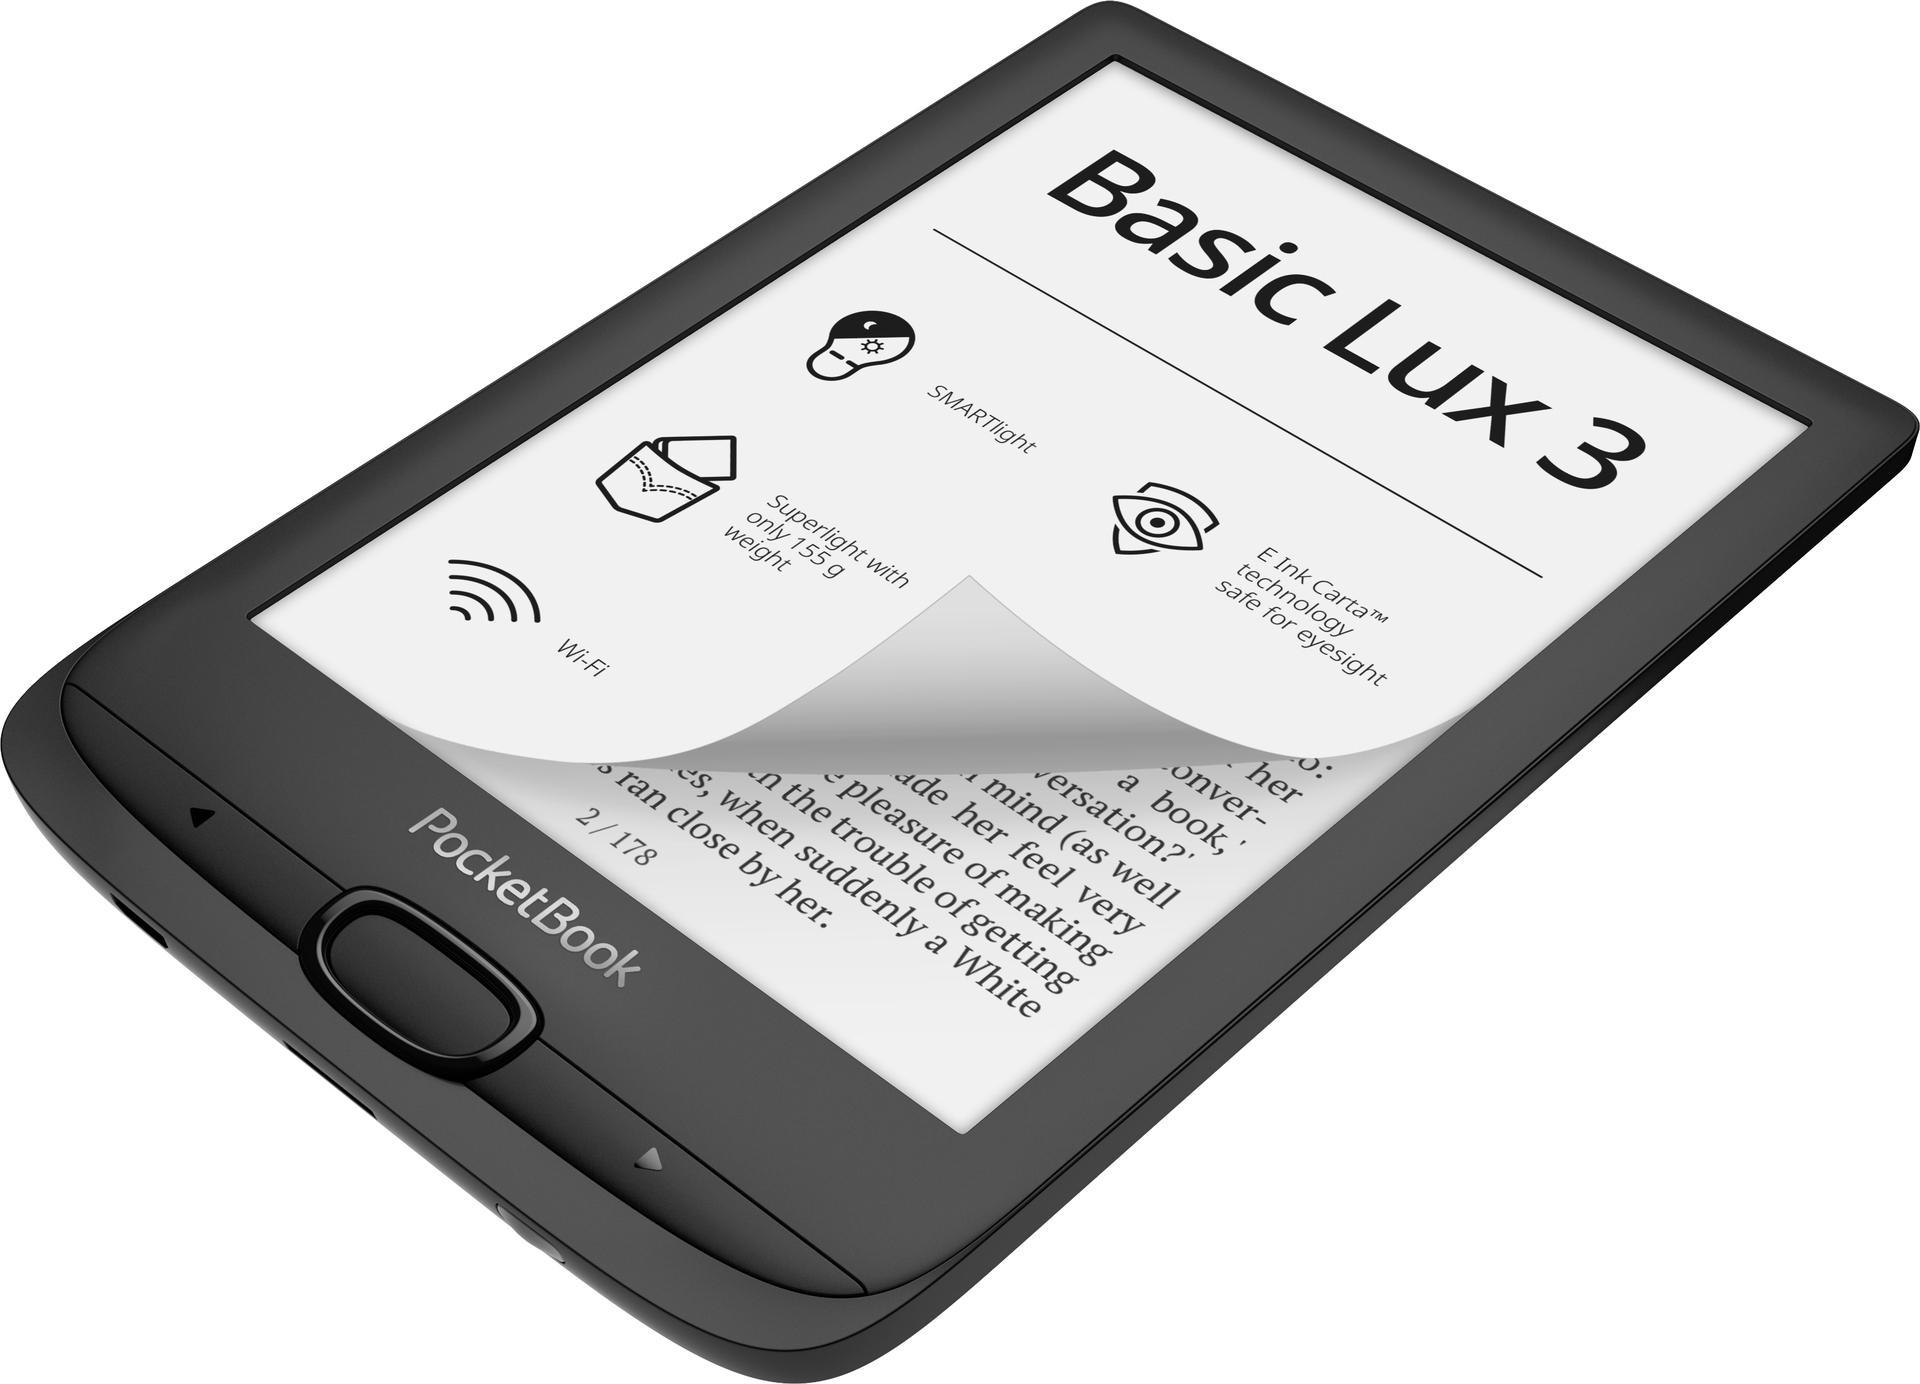 InkBlack Lux 3 InkBlack eReader Basic POCKETBOOK GB 8